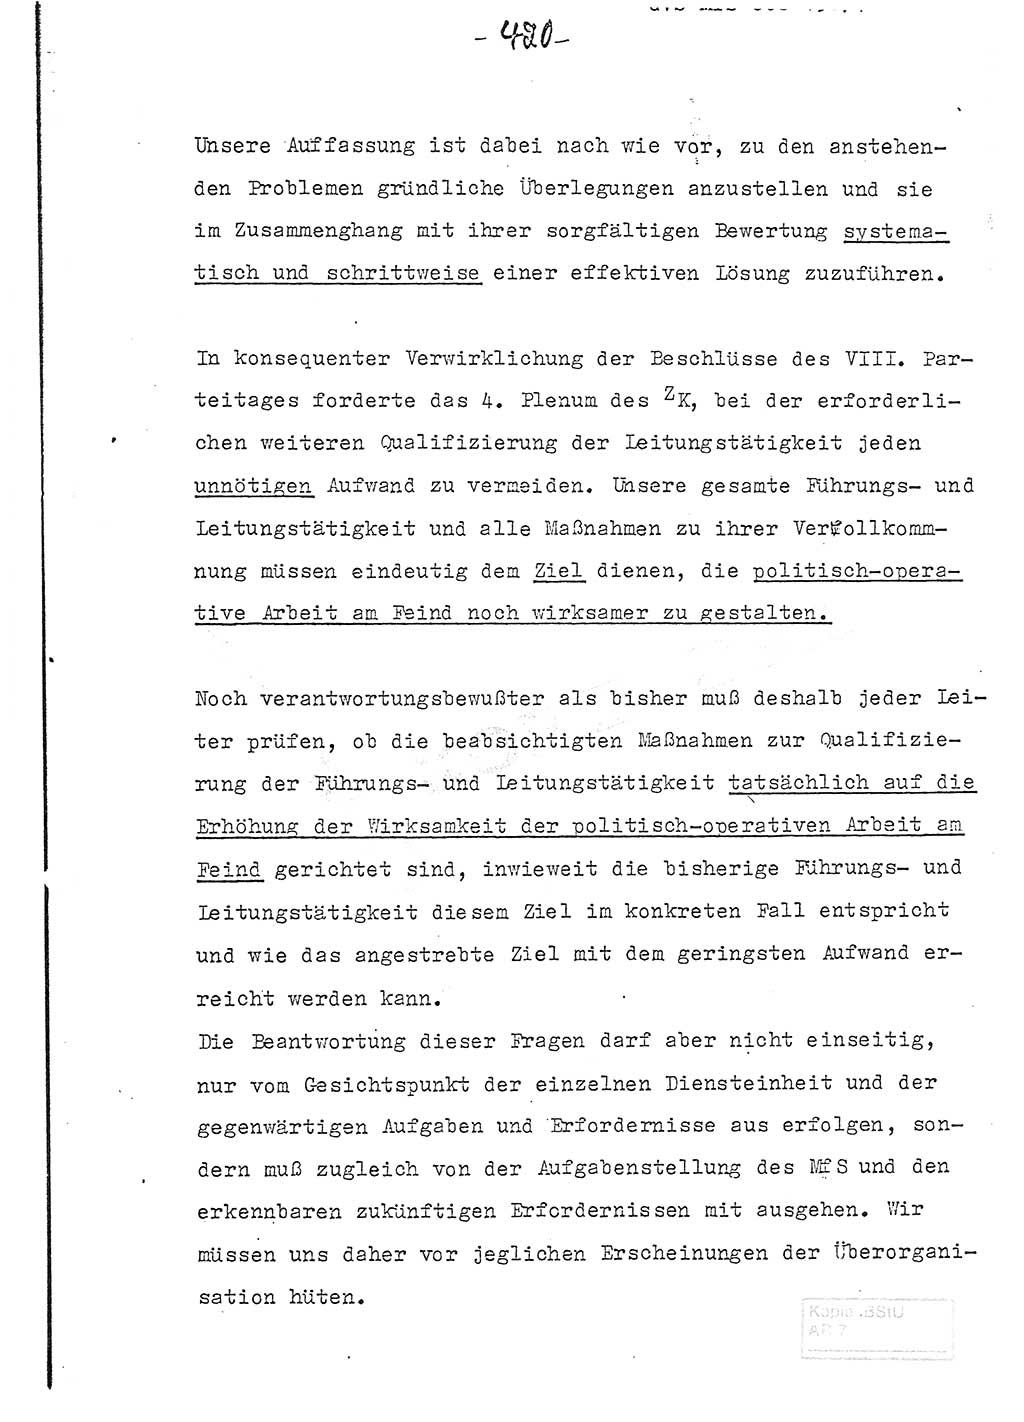 Referat (Entwurf) des Genossen Minister (Generaloberst Erich Mielke) auf der Dienstkonferenz 1972, Ministerium für Staatssicherheit (MfS) [Deutsche Demokratische Republik (DDR)], Der Minister, Geheime Verschlußsache (GVS) 008-150/72, Berlin 25.2.1972, Seite 420 (Ref. Entw. DK MfS DDR Min. GVS 008-150/72 1972, S. 420)